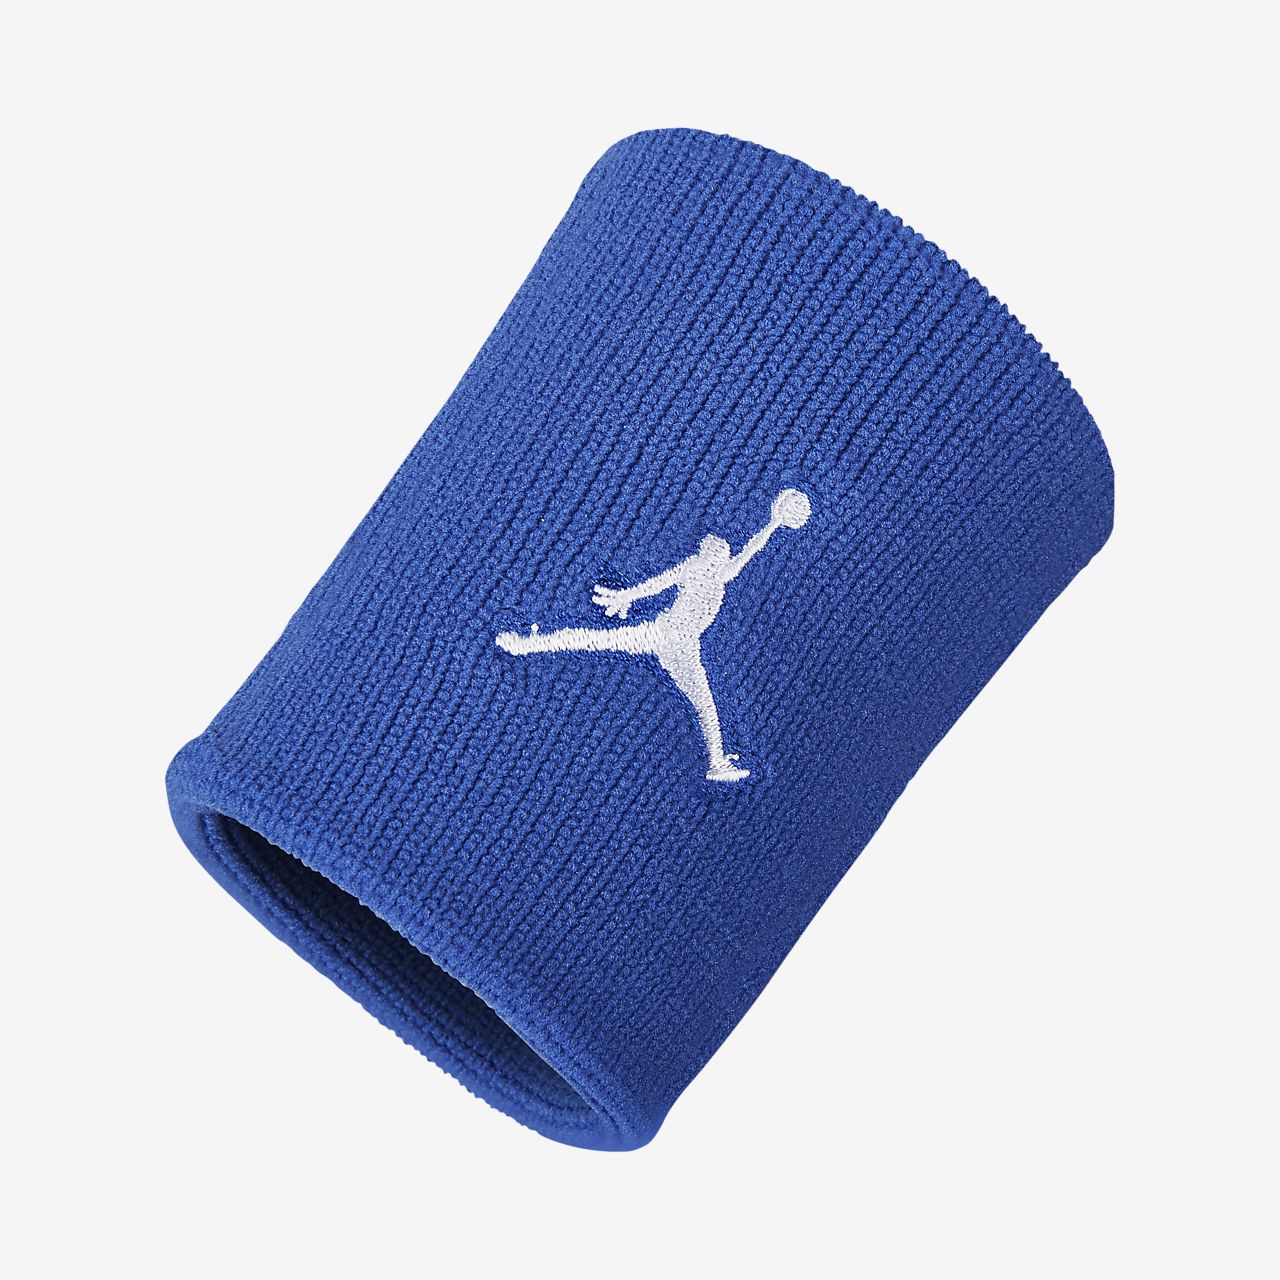 Jordan Jumpman Wristbands. Nike JP